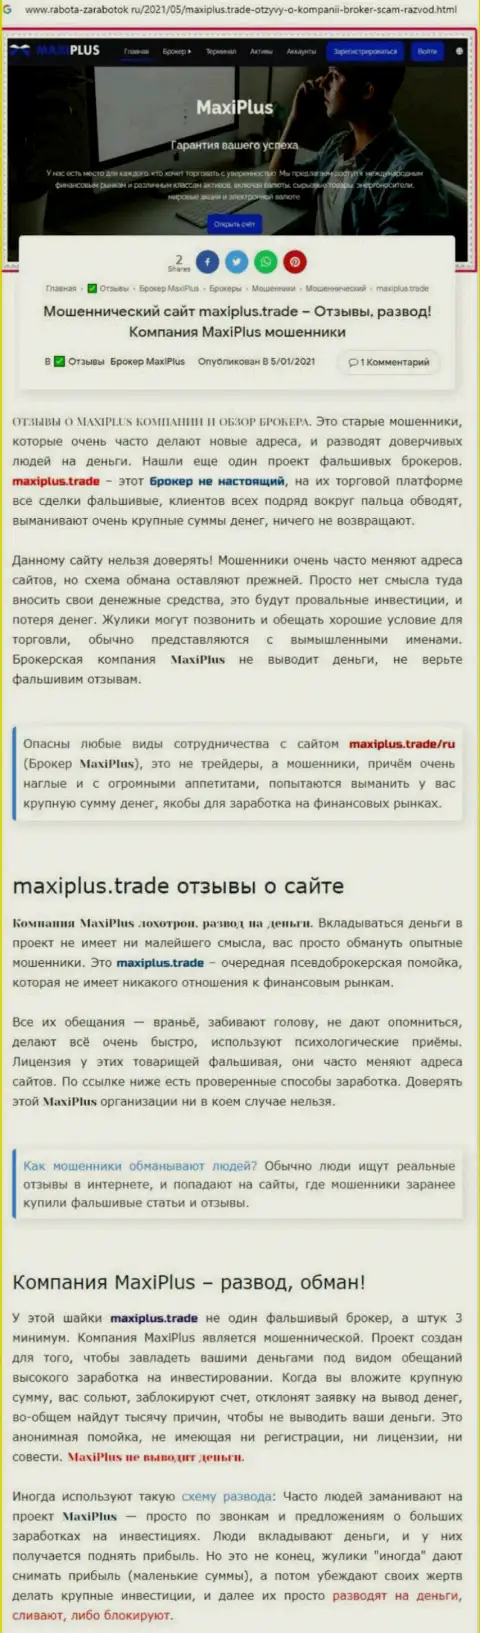 Maxi Plus - это МОШЕННИКИ !!! Принцип деятельности РАЗВОДНЯКА (обзор)